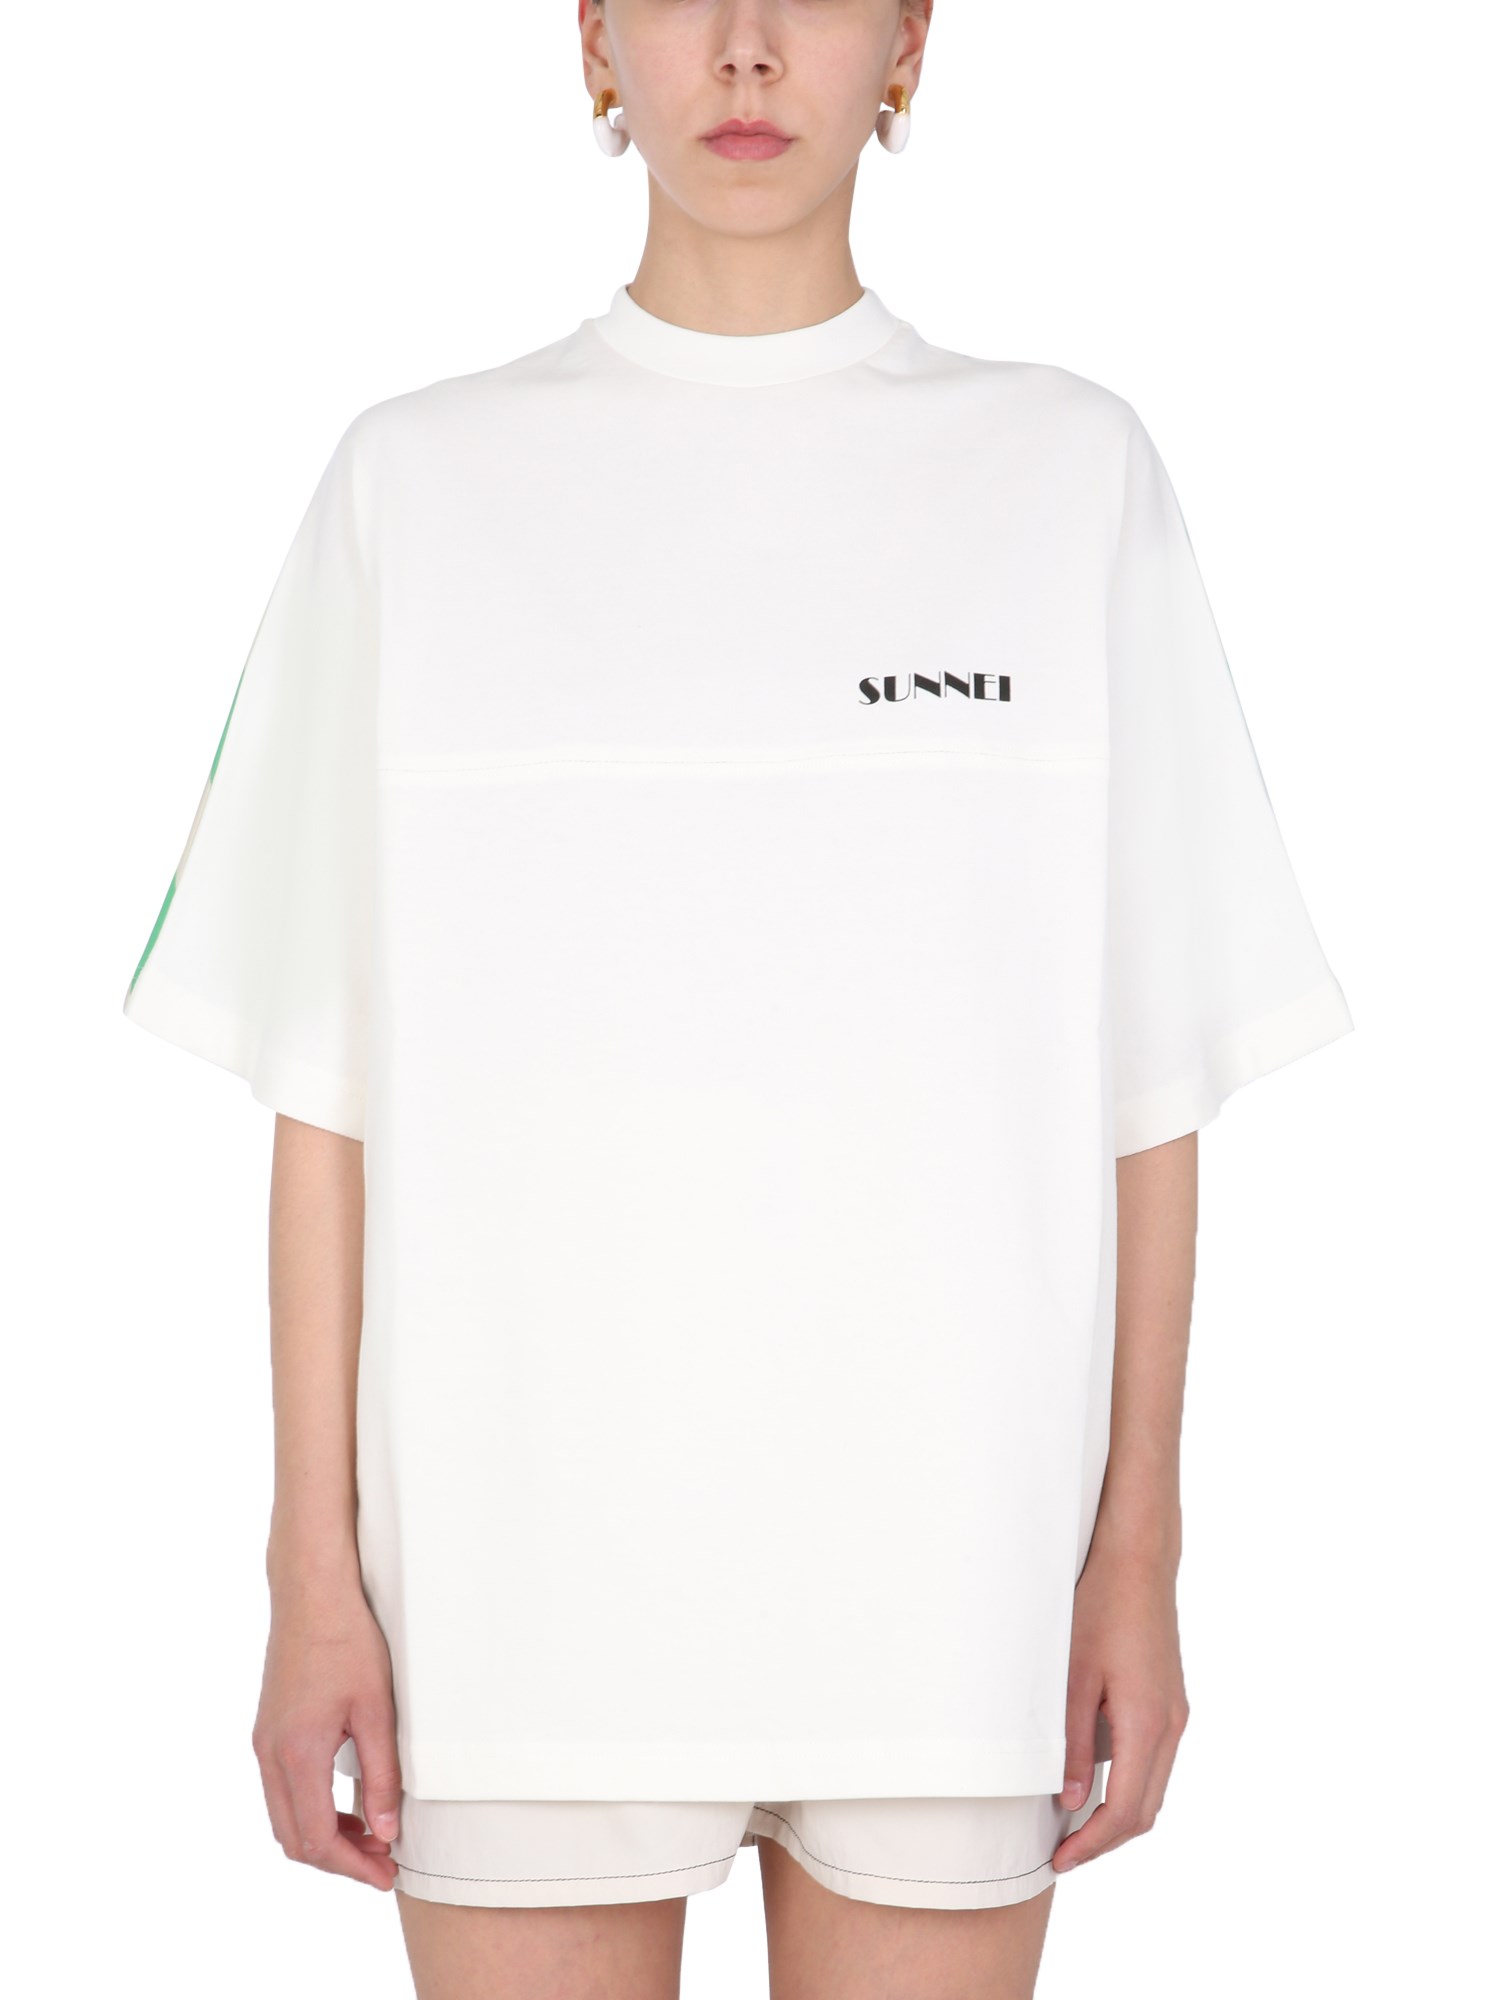 Sunnei X Eleonora Bonucci Oversize Fit T-shirt In Multicolour